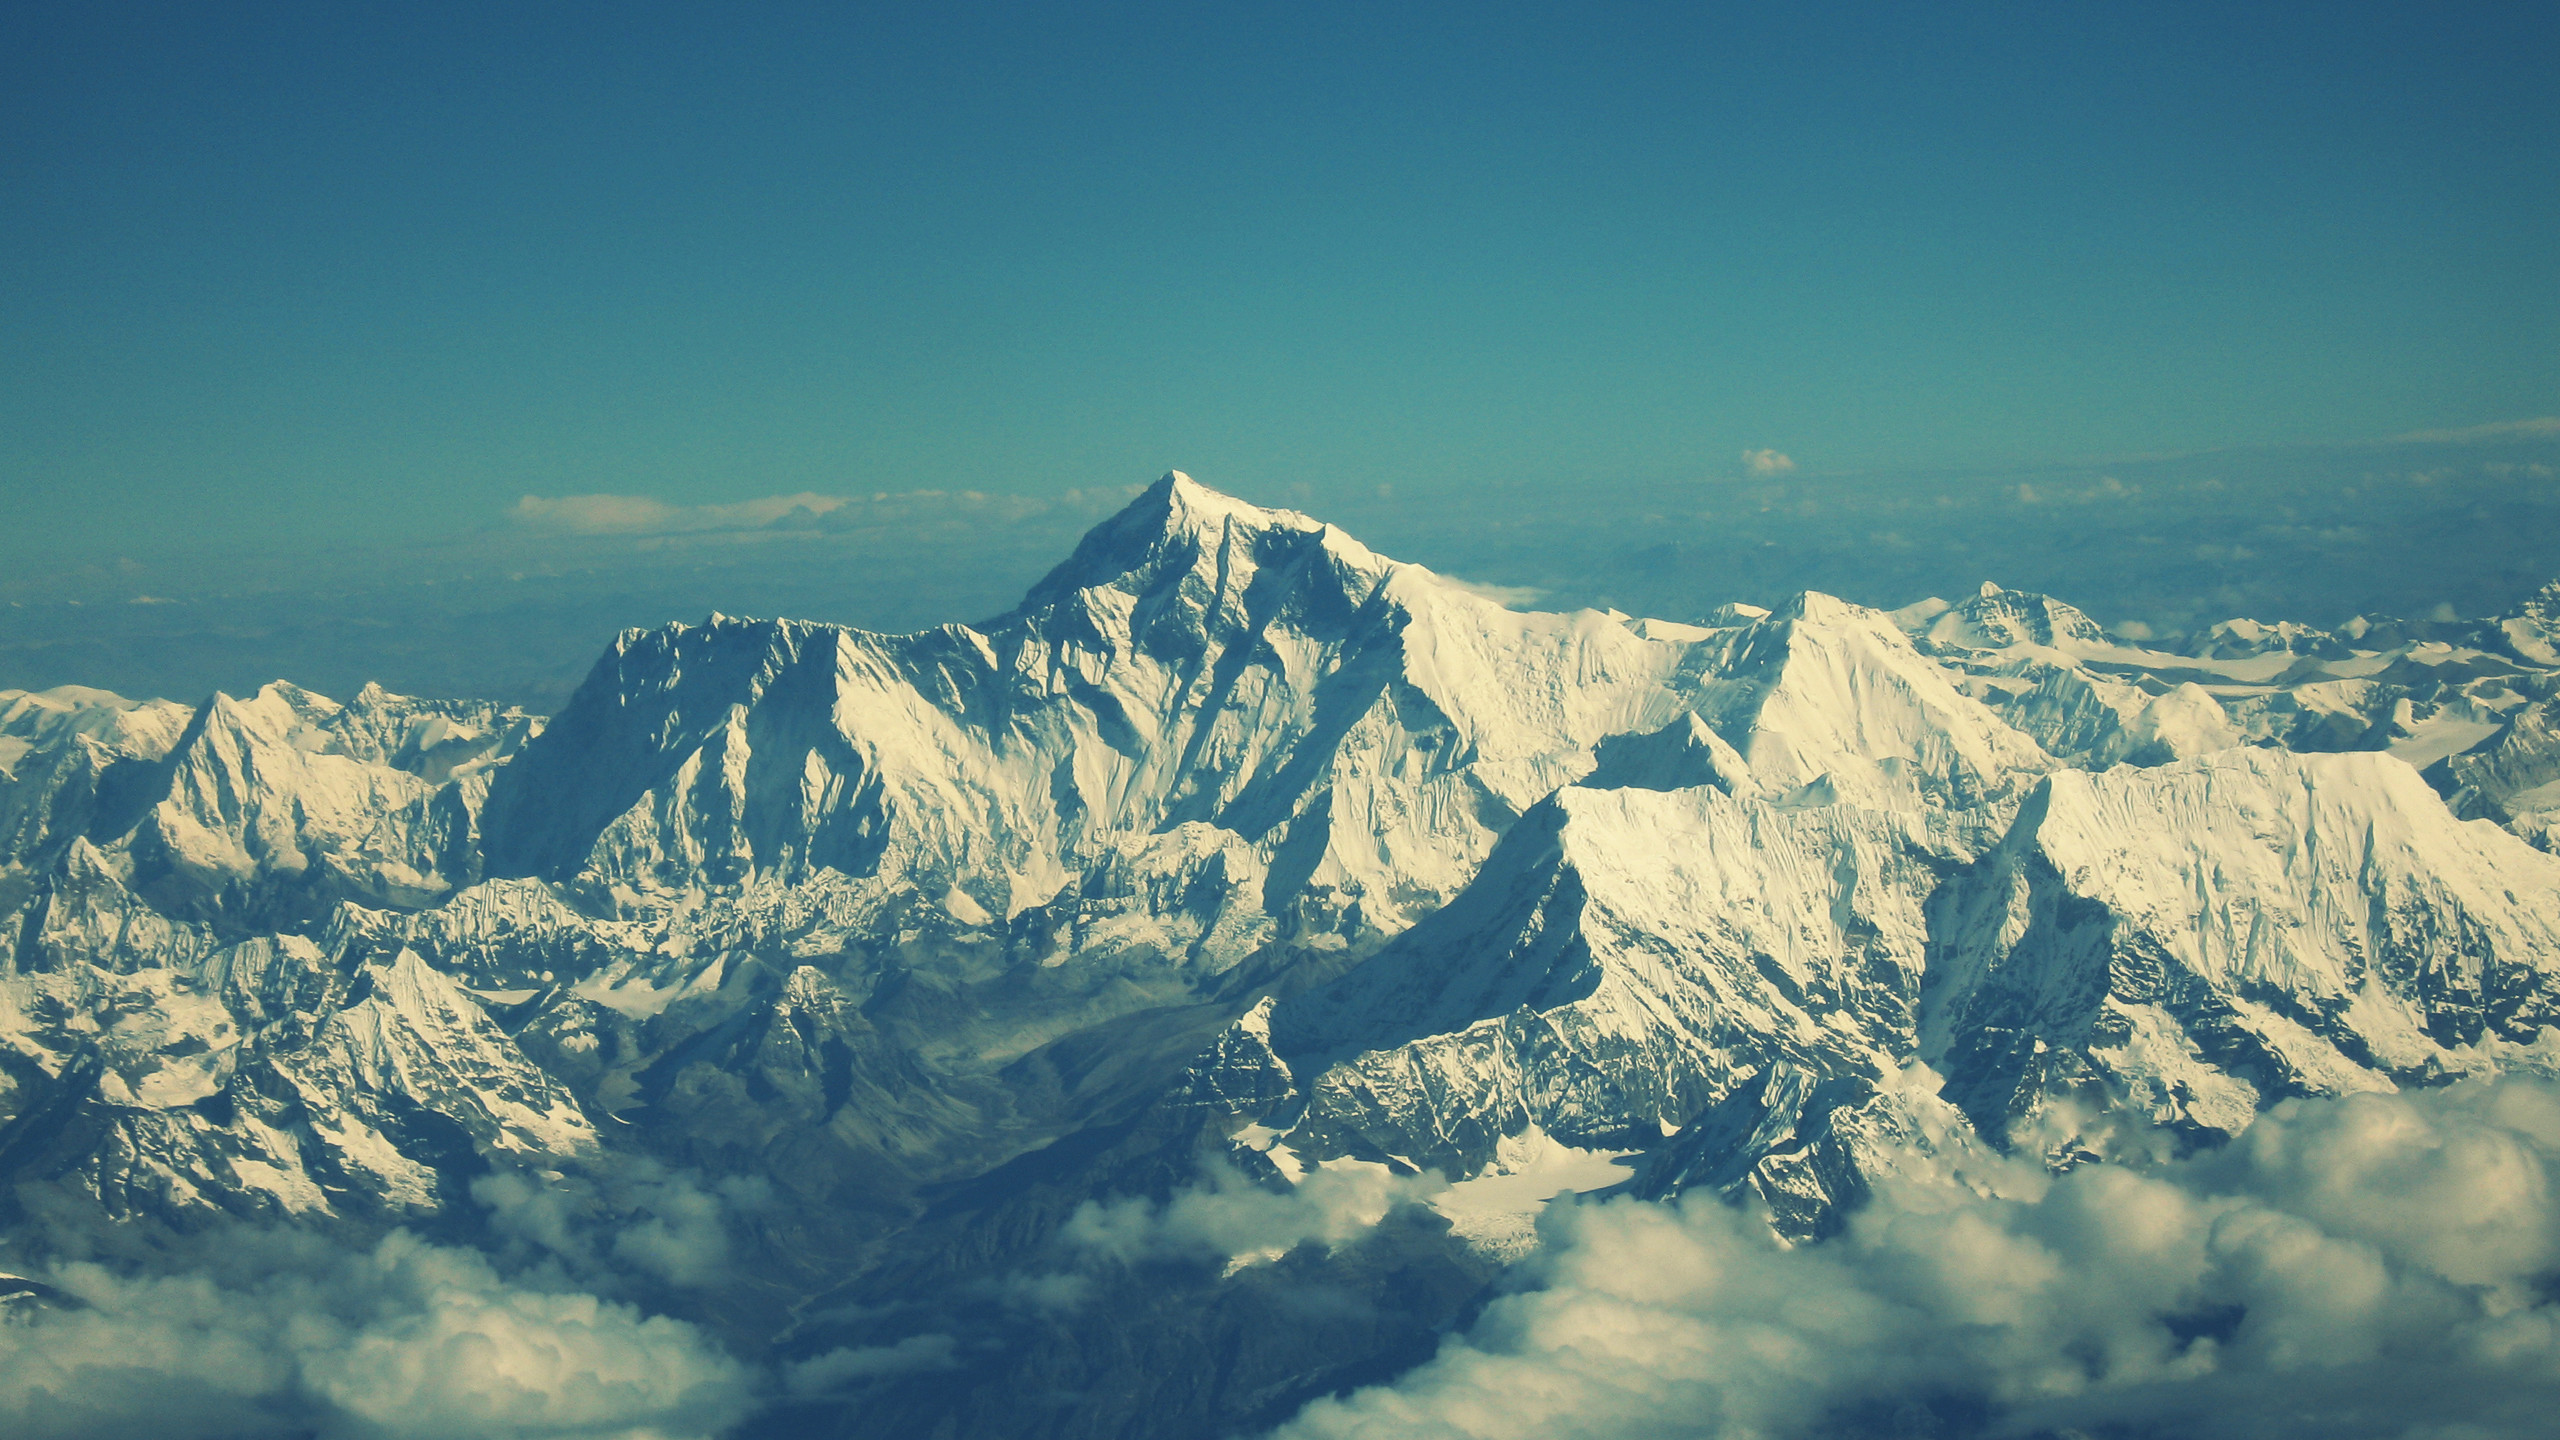 Himaliyas Mountains 2560 x 1440 Background